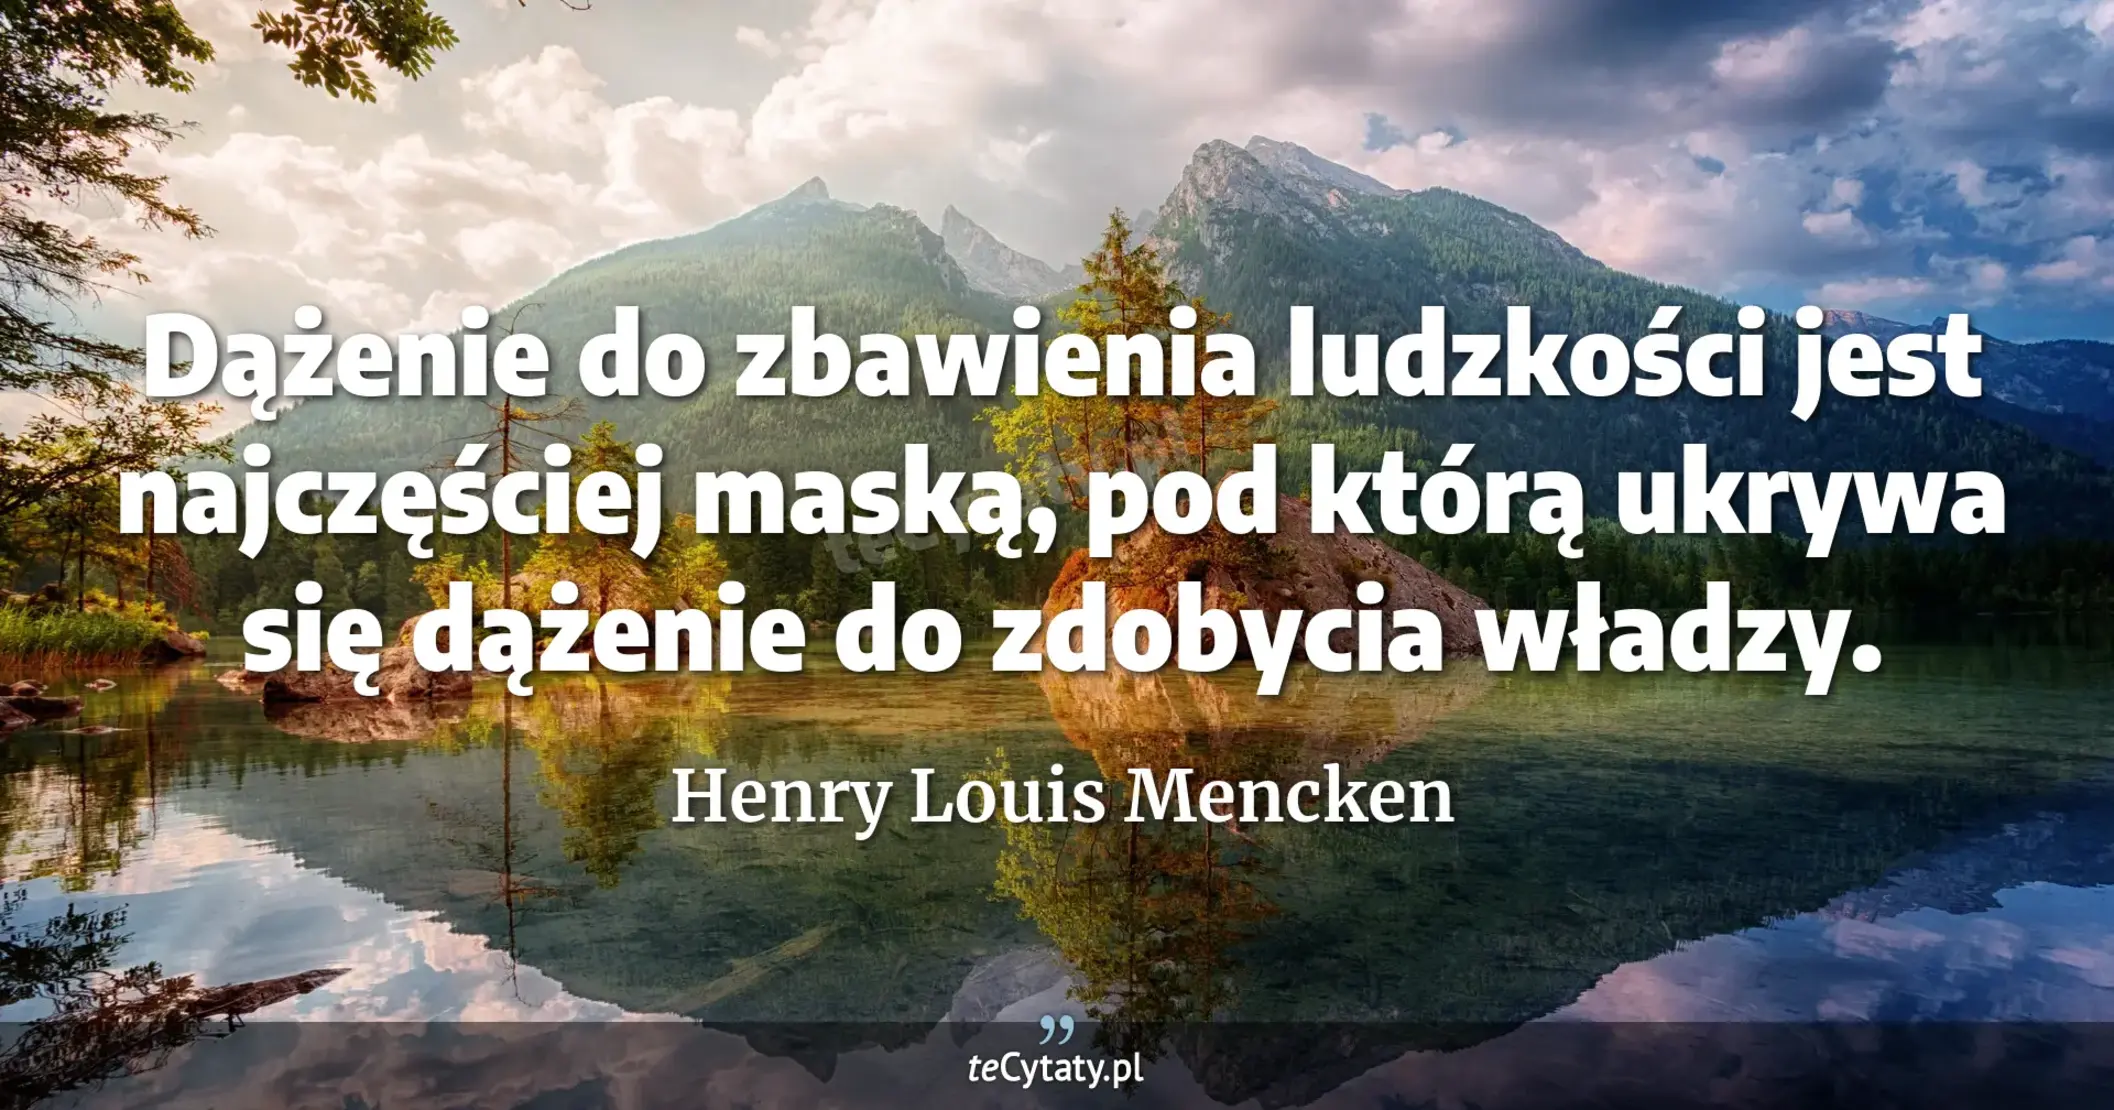 Dążenie do zbawienia ludzkości jest najczęściej maską, pod którą ukrywa się dążenie do zdobycia władzy. - Henry Louis Mencken